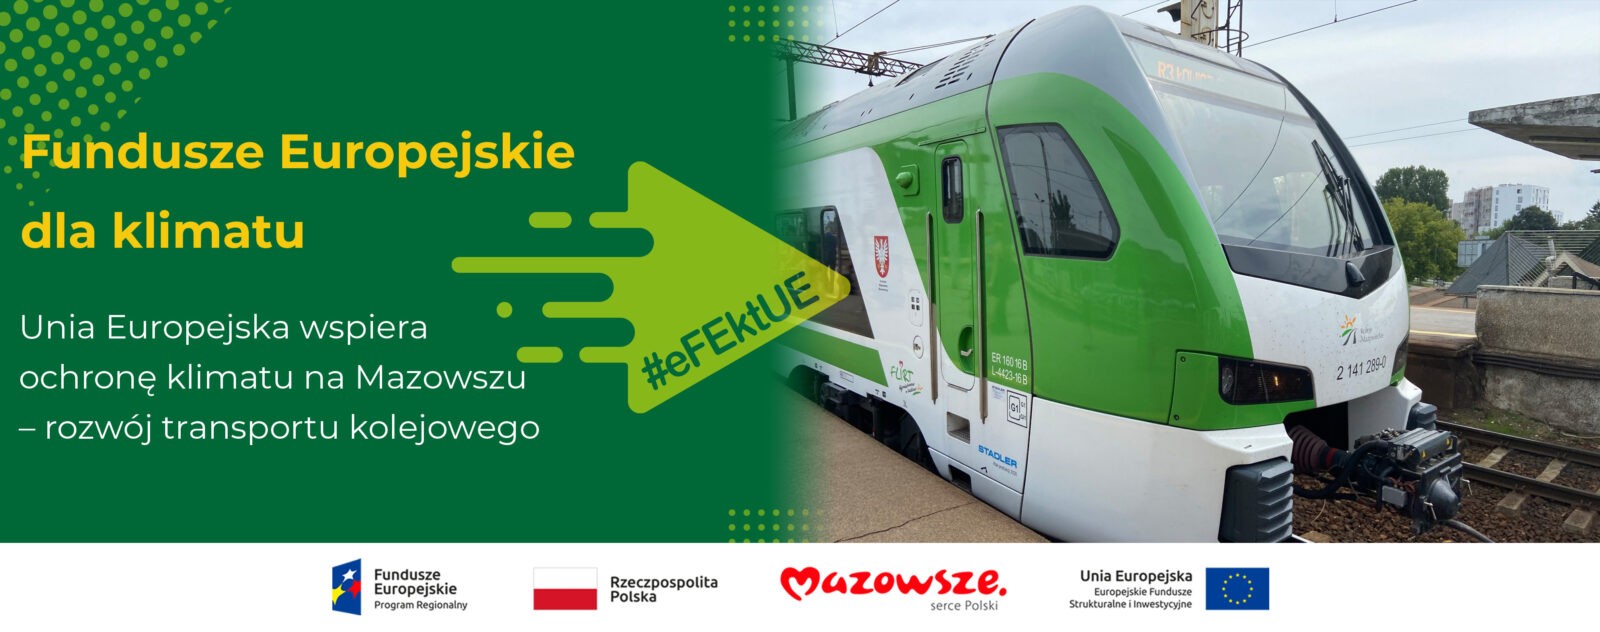 Fundusze Europejskie dla klimatu. Unia Europejska wspiera ochronę klimatu na Mazowszu: rozwój transportu kolejowego. Obok zdjęcie pociągu.